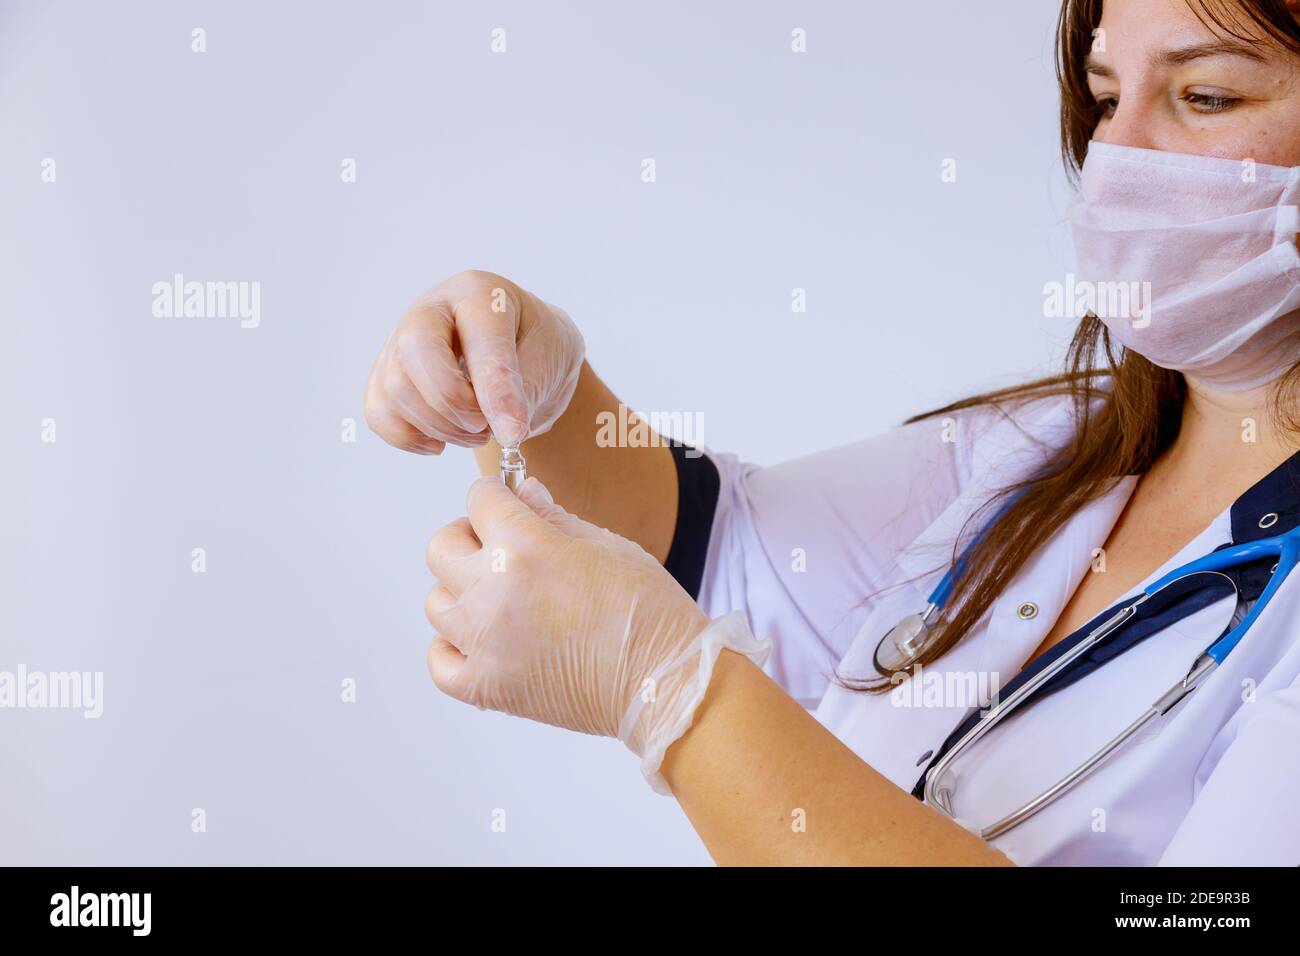 Das Medikament Handschuhe Arzt hält eine Ampulle für die Impfung Behandlung In seiner Hand konzentrieren sich auf die Ampulle Stockfoto